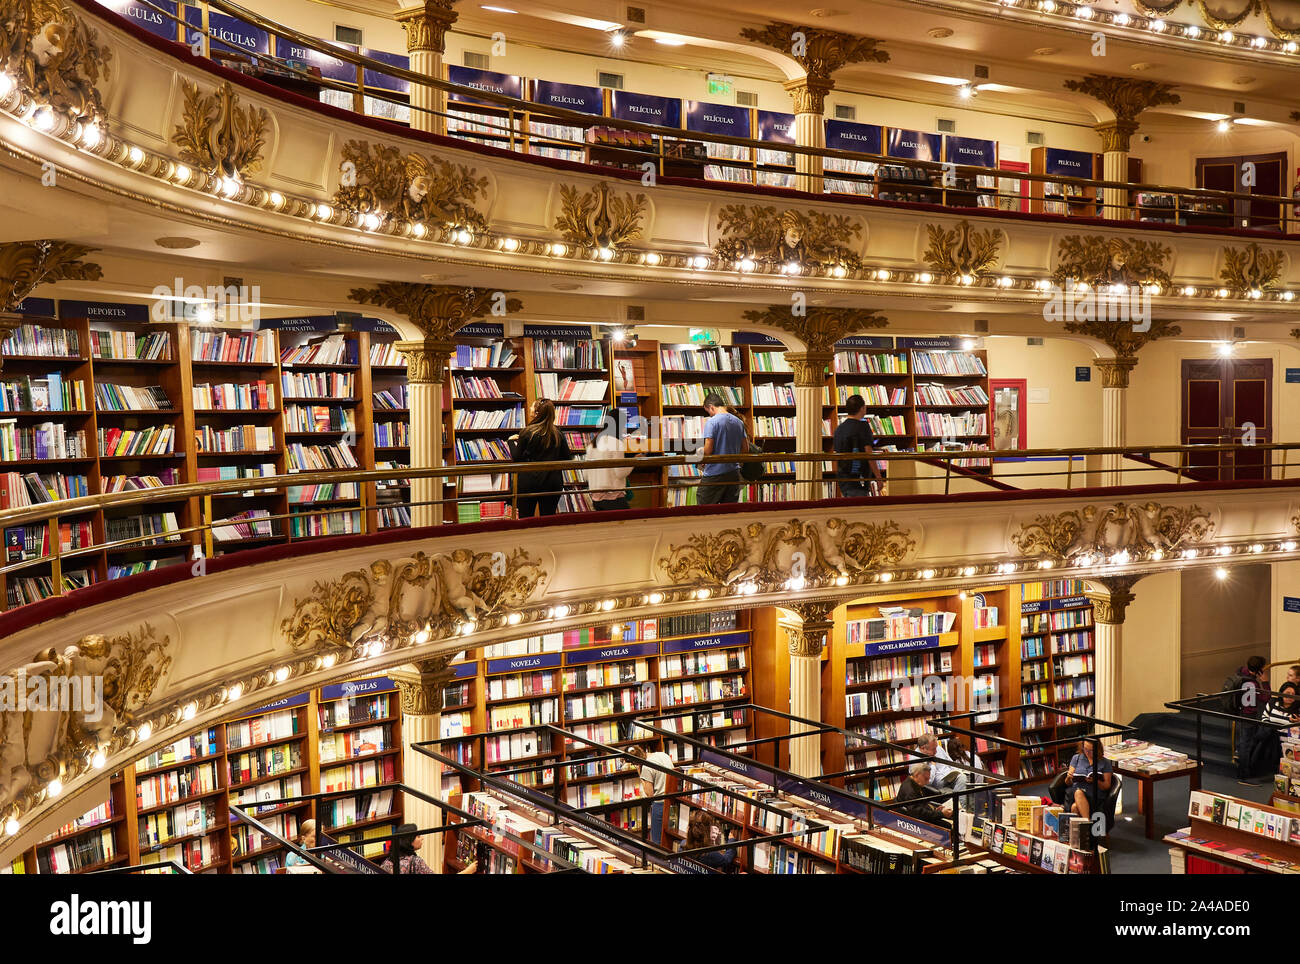 Les balcons de l'Ateneo Grand Splendid librairie, Recoleta, Buenos Aires, Argentine. Banque D'Images